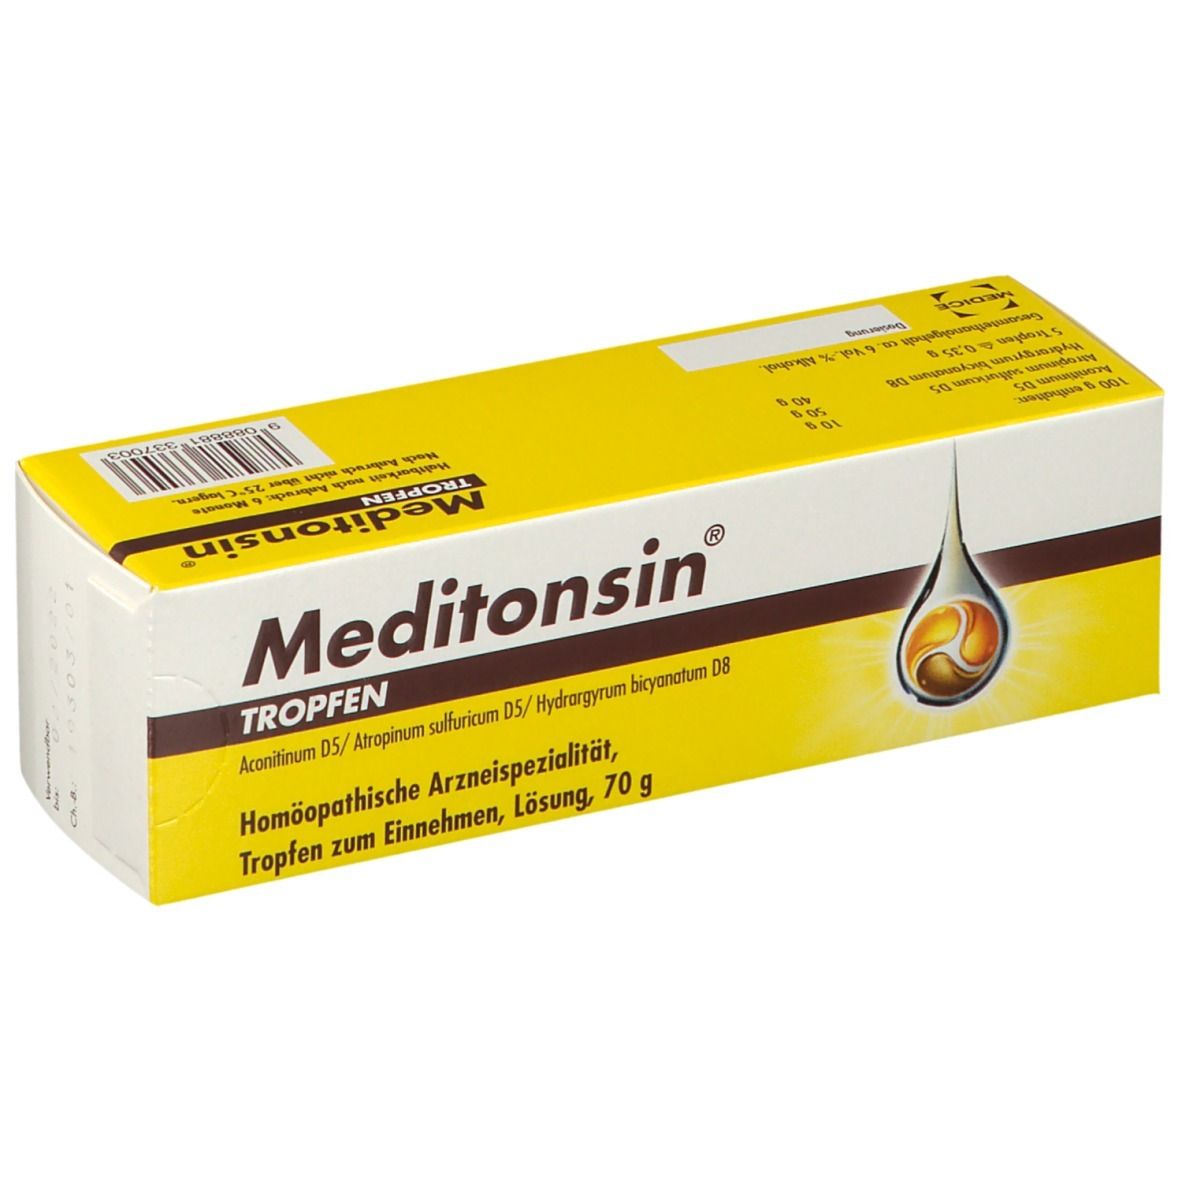 meditonsin® Tropfen